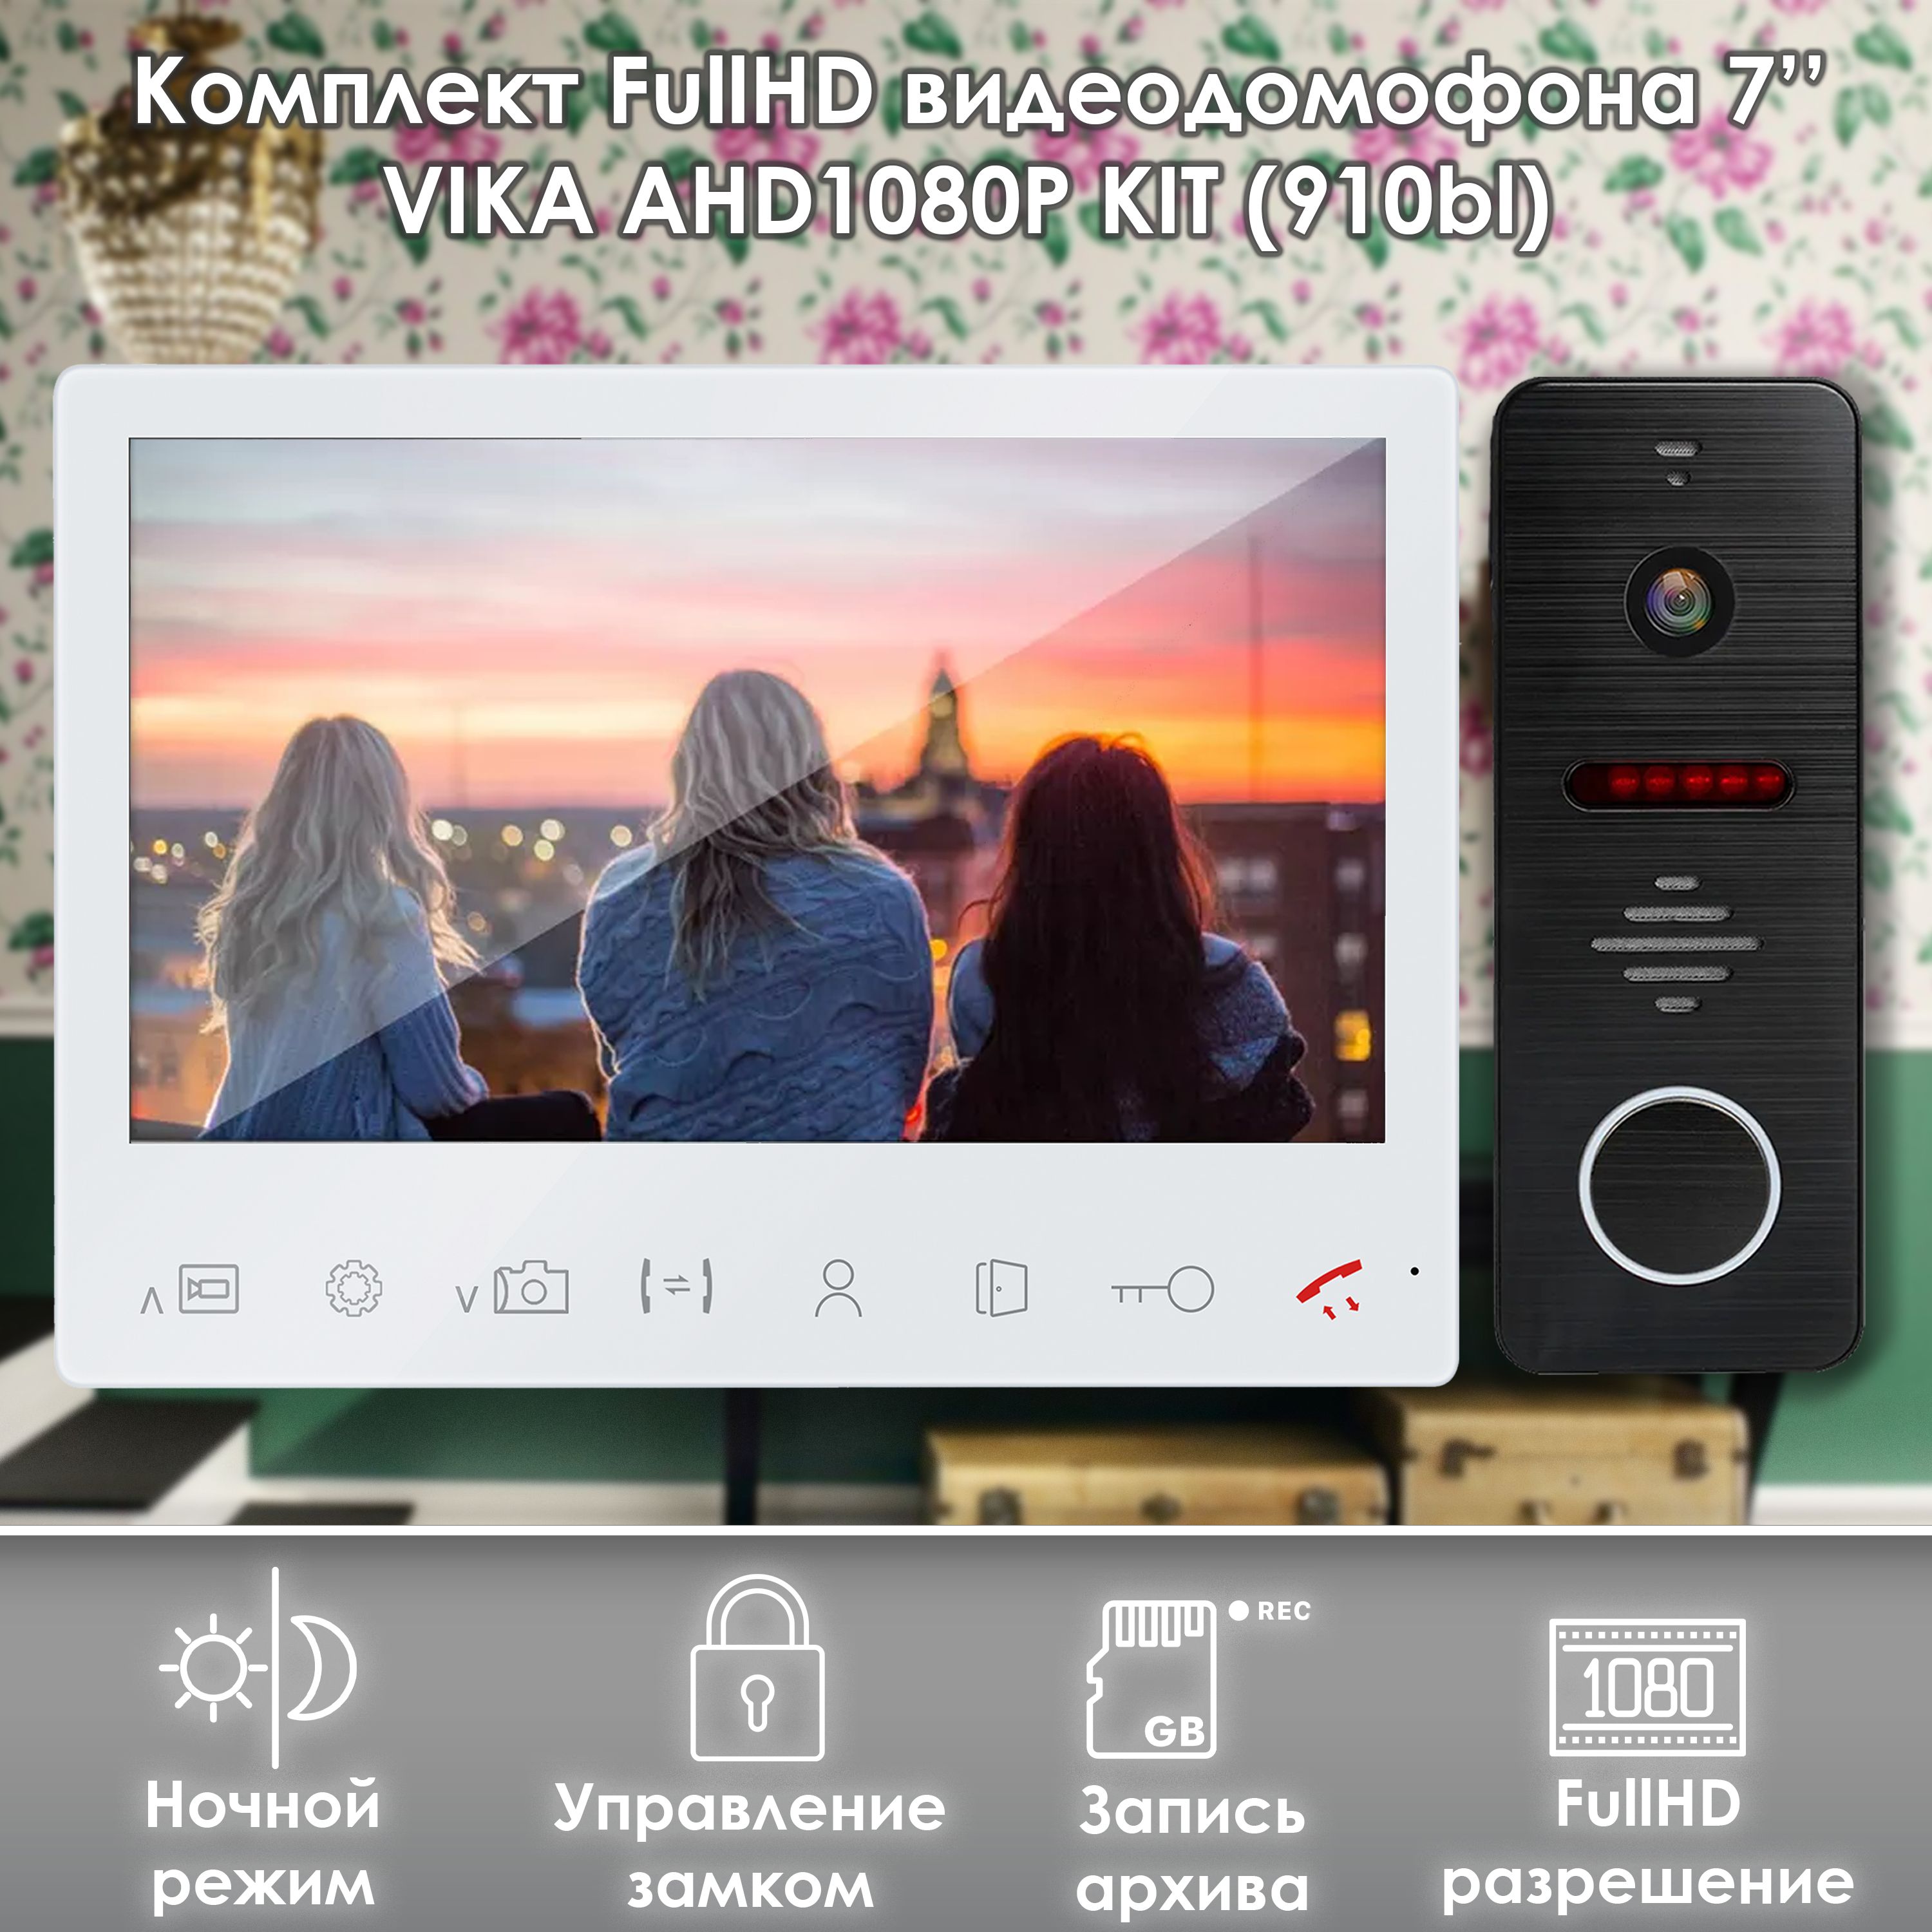 Комплект видеодомофона Alfavision Vika-KIT (910bl) Full HD 7 дюймов комплект видеодомофона alfavision lada ahd1080p kit 910bl full hd 7 дюймов